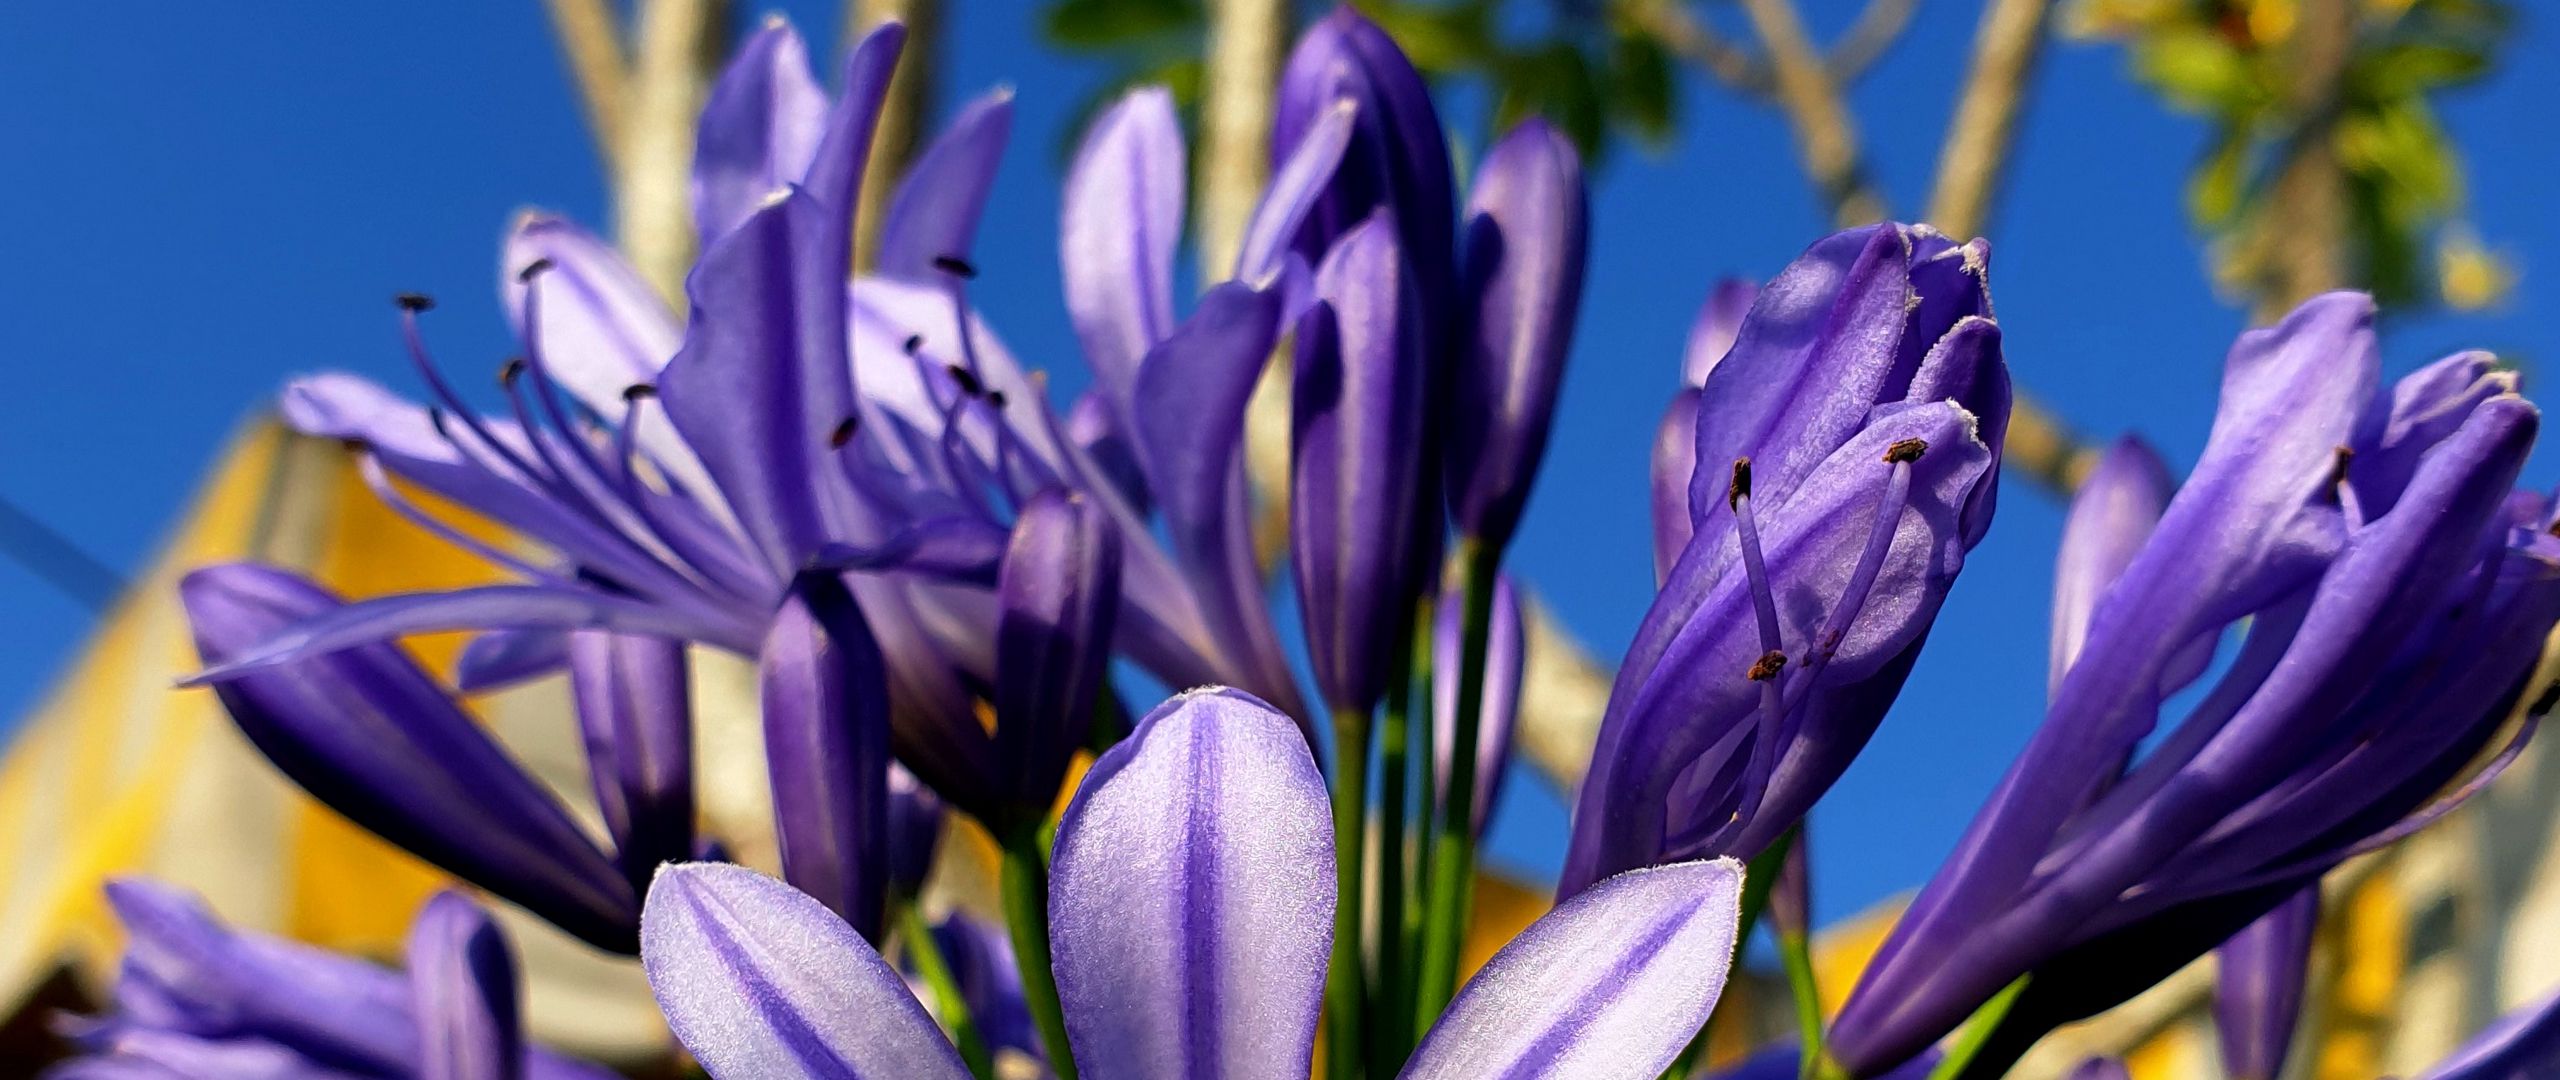 Fondos de pantalla Purple flowers